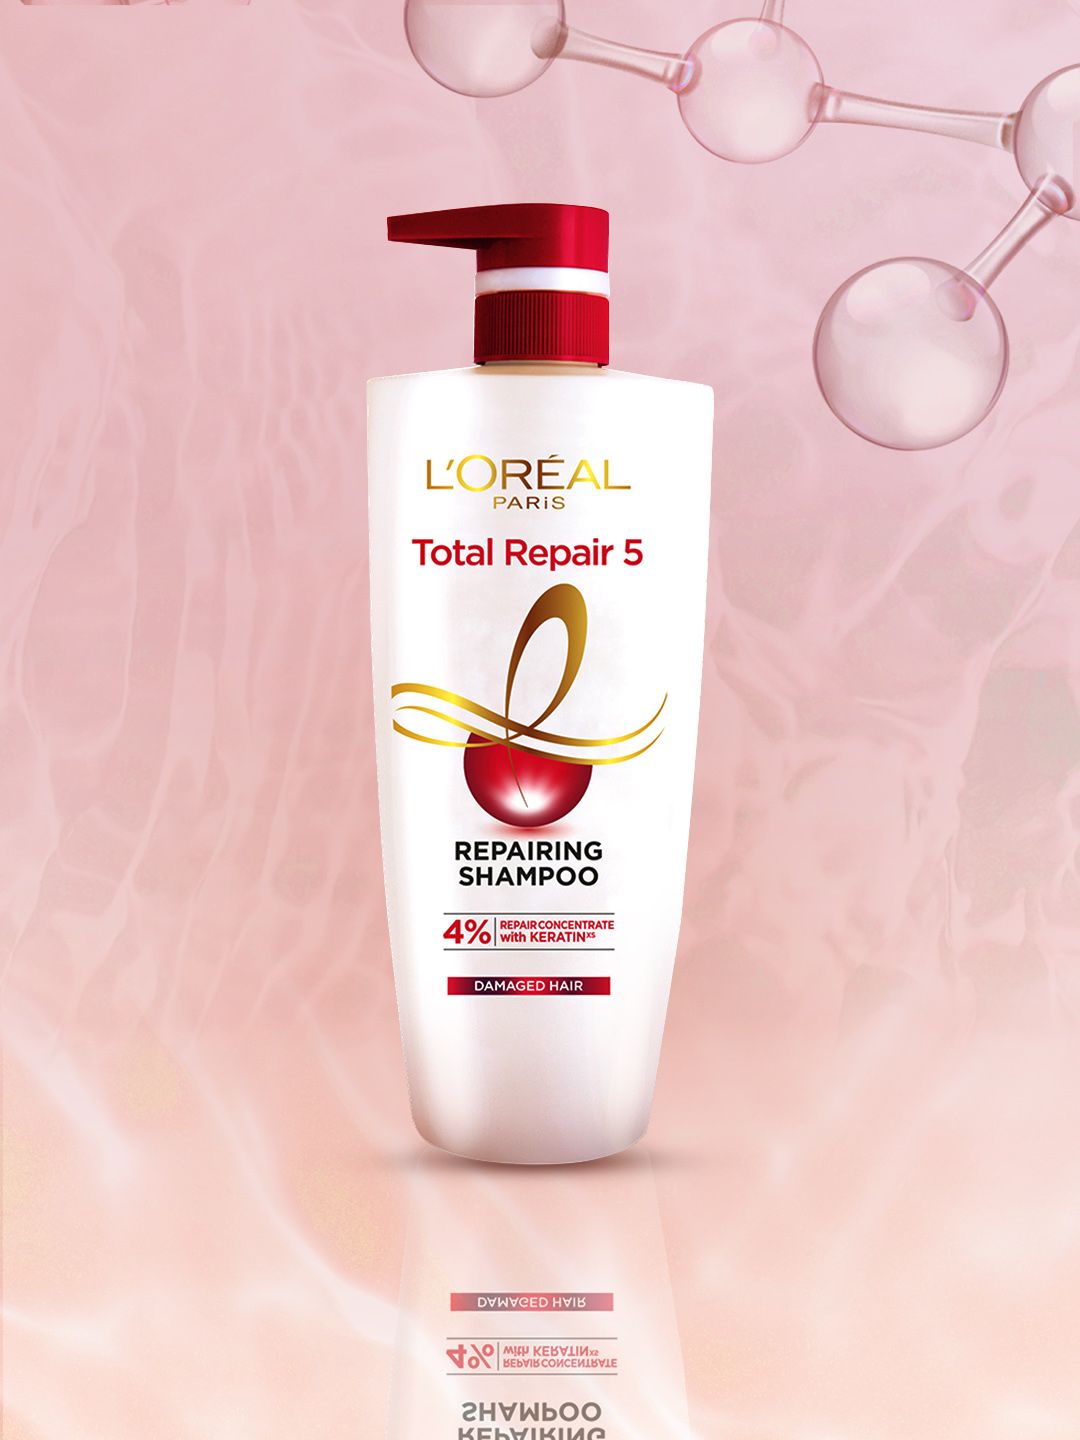 LOreal Paris Total Repair 5 Advanced Repairing Shampoo 640ml Price in India